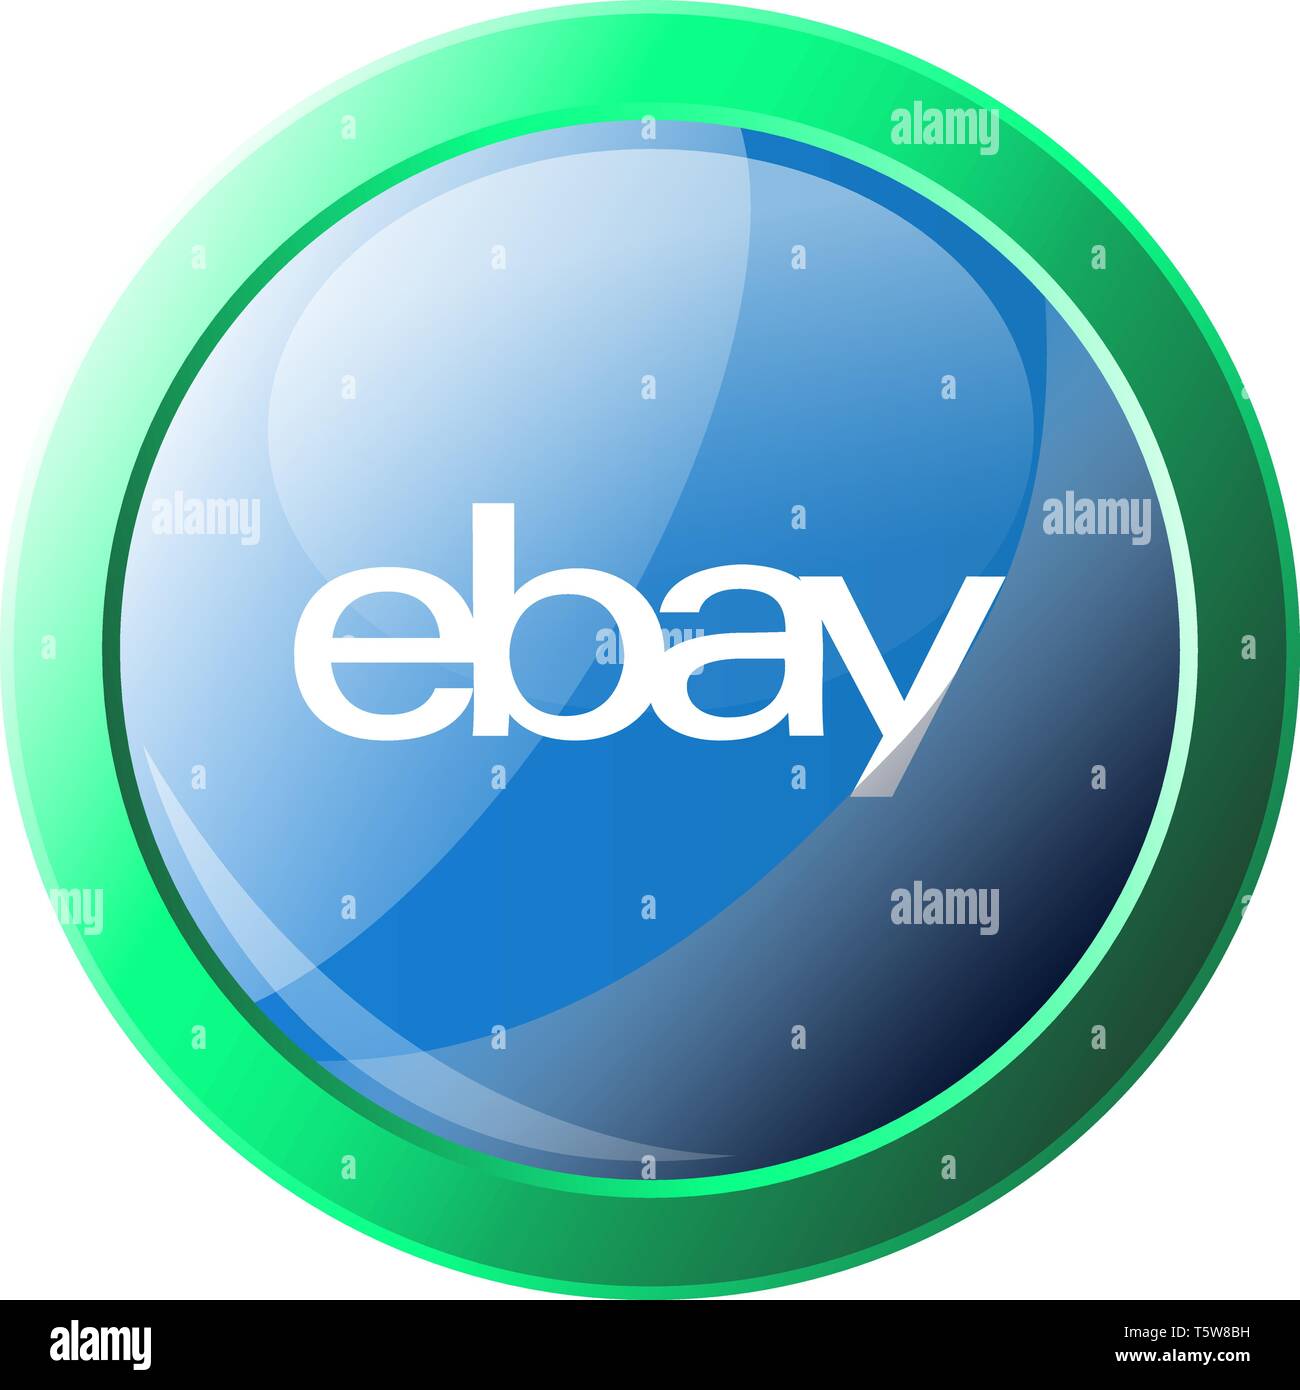 Vert et Bleu icône vecteur illustration d'une plate-forme d'EBay logo sur fond blanc Illustration de Vecteur